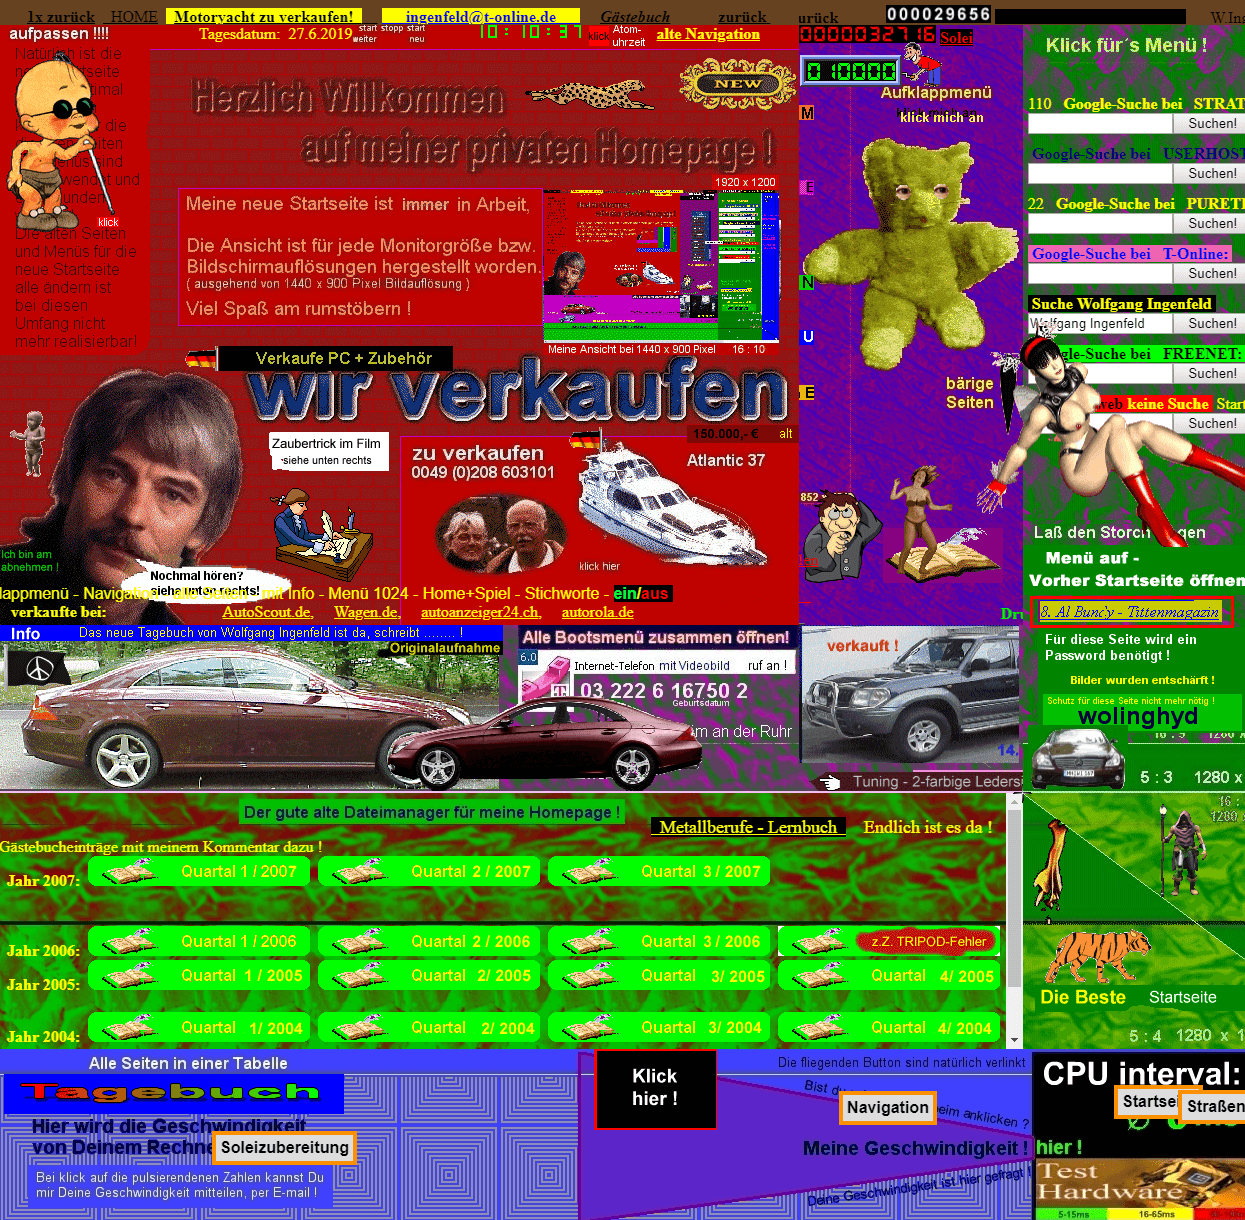 Ingenfeld website in 2006